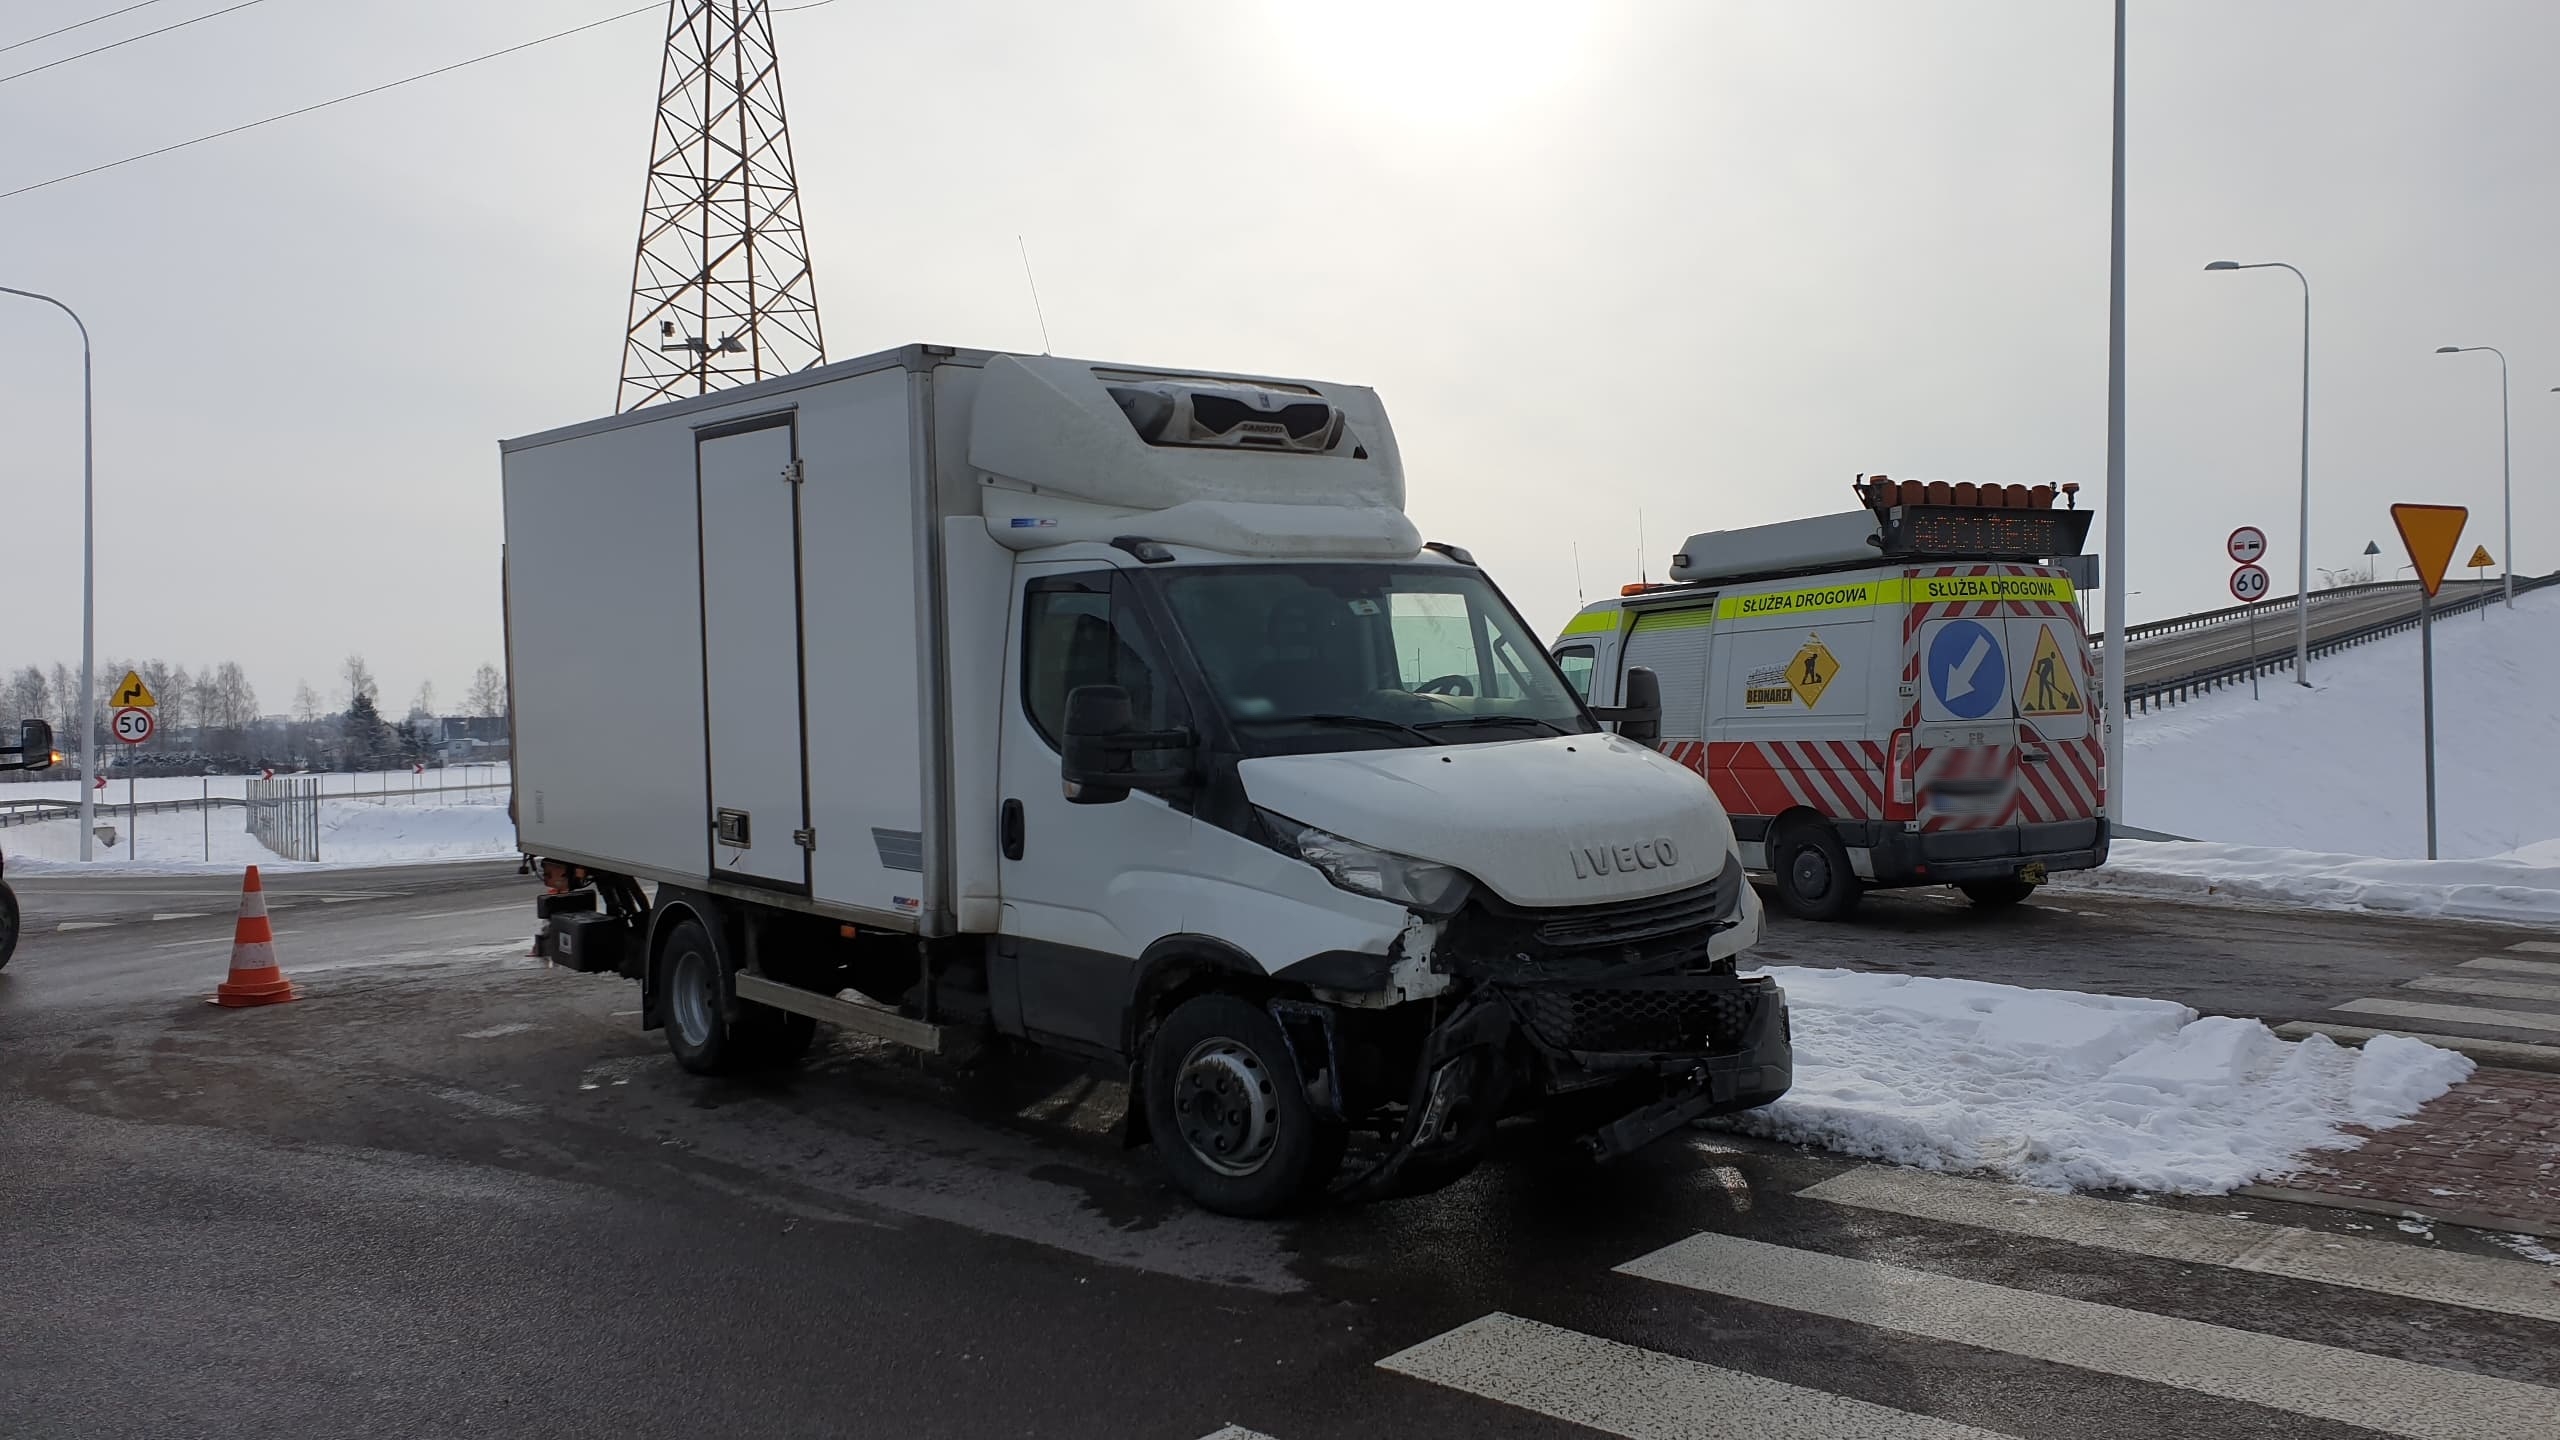 Zderzenie dwóch pojazdów w Świdniku, są utrudnienia w ruchu (zdjęcia)